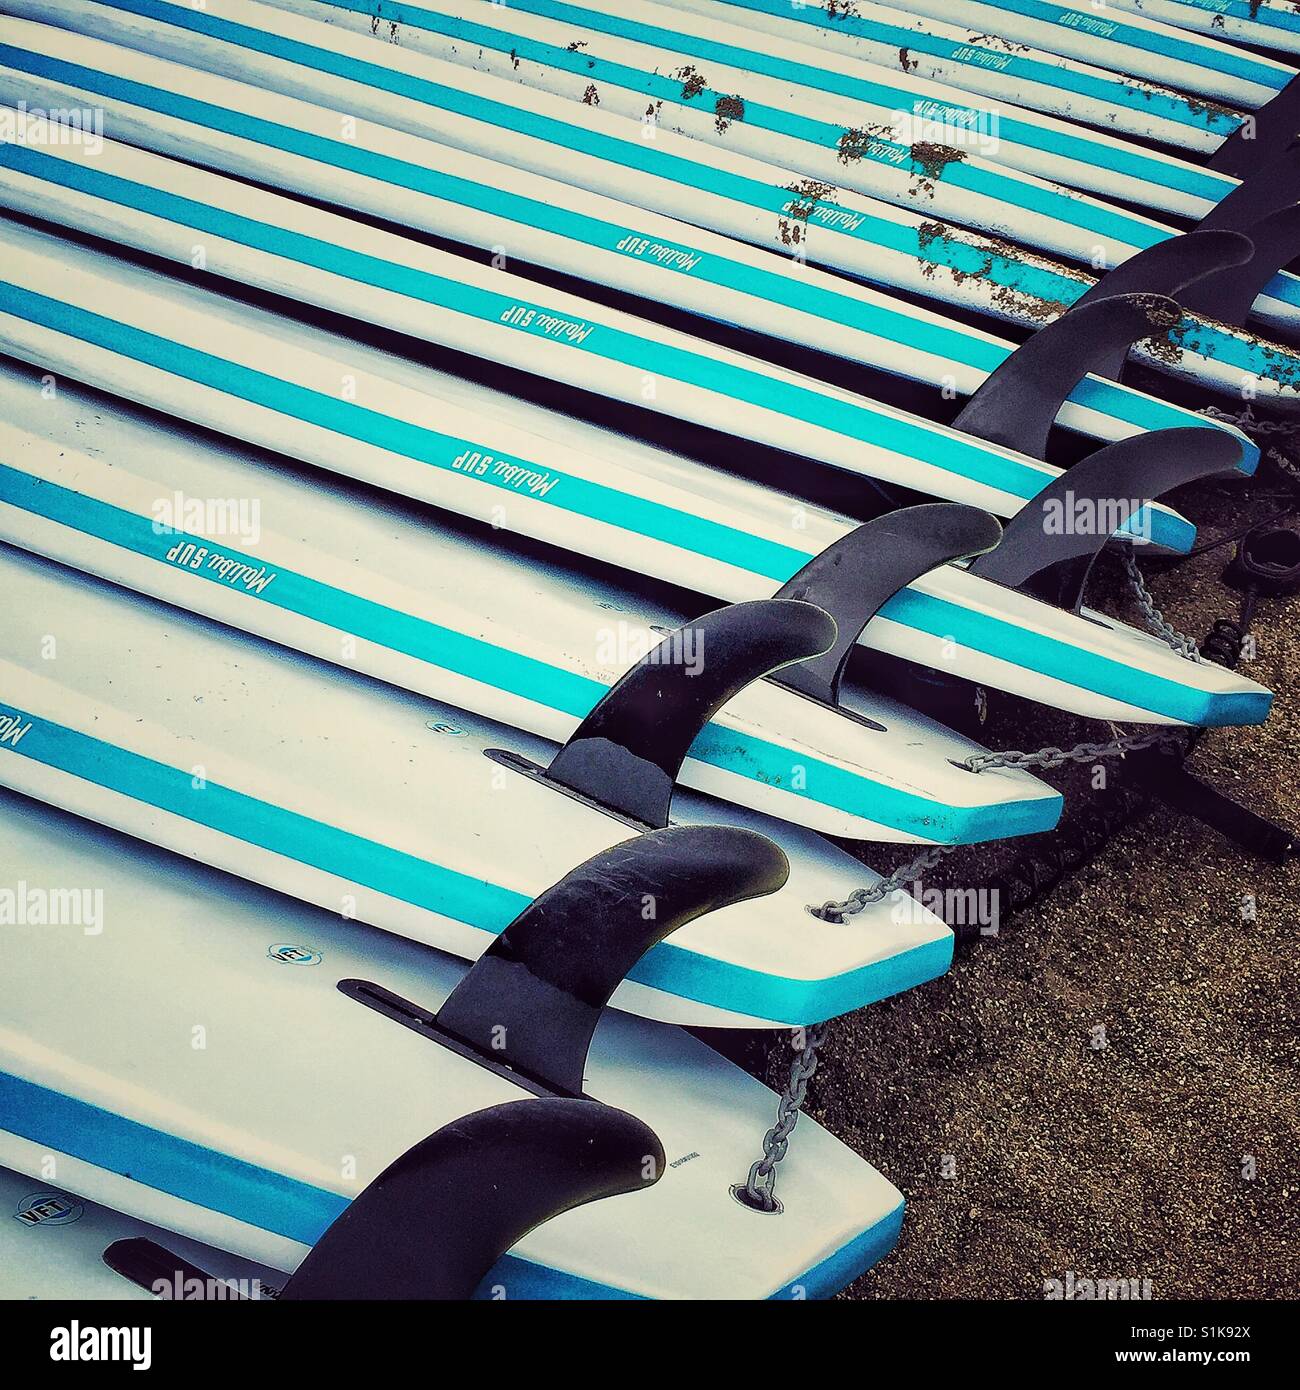 Chaîne hôtelière Paddleboards sur une plage Banque D'Images